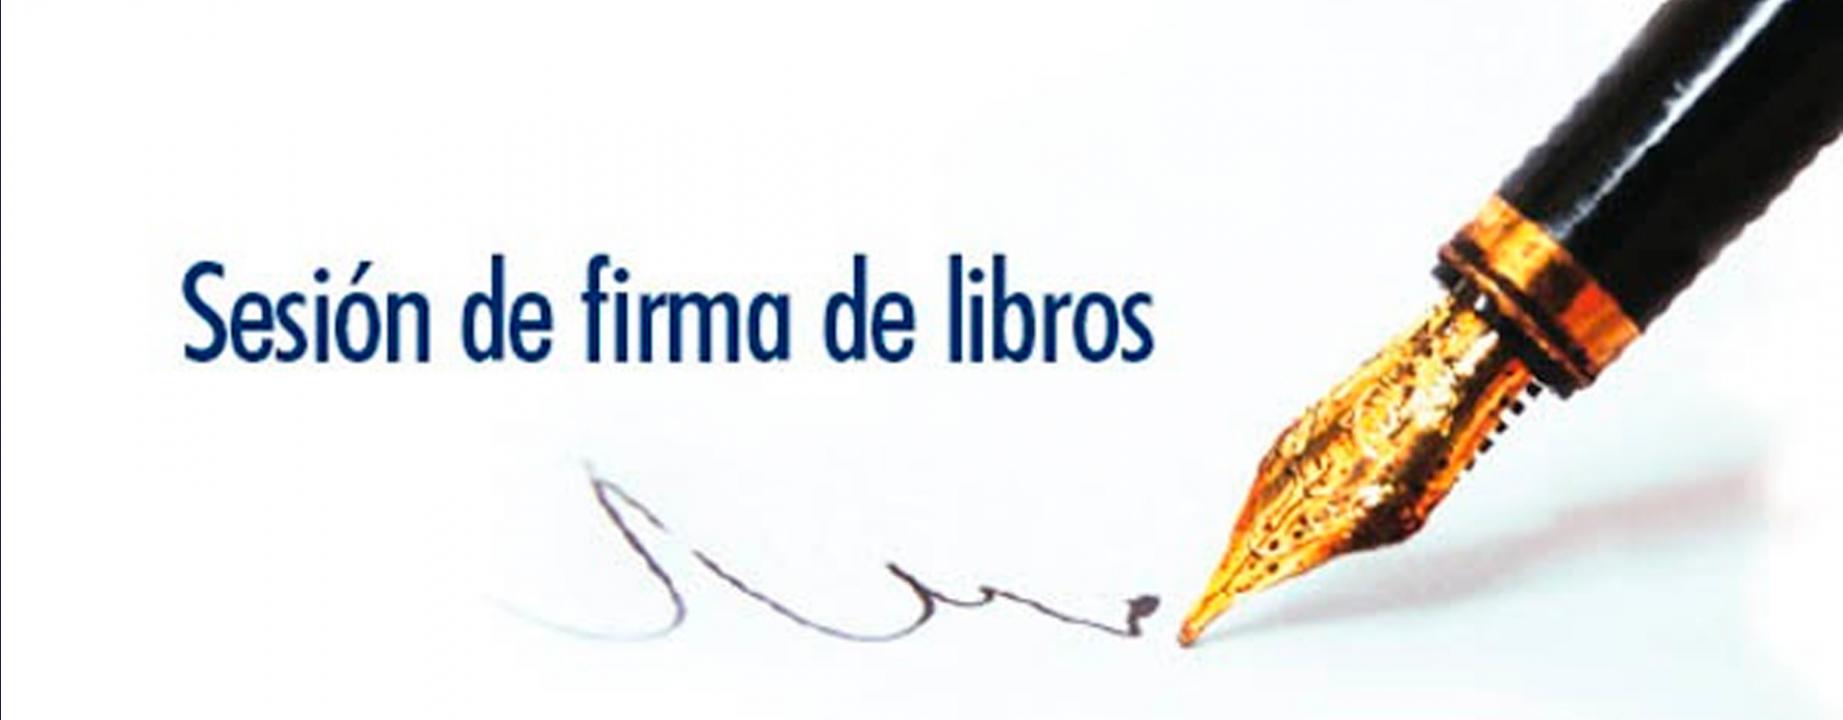 firma-de-libros-banner